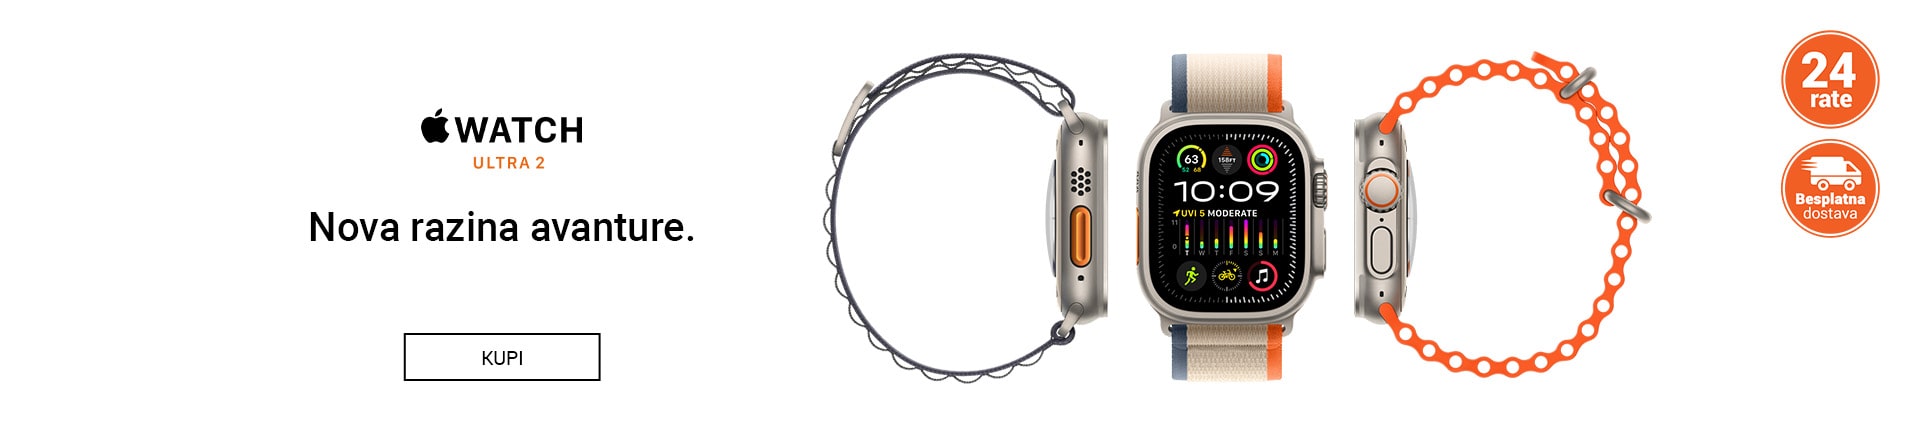 BA~Apple Watch Ultra 2 MOBILE 380 X 436-min.jpg